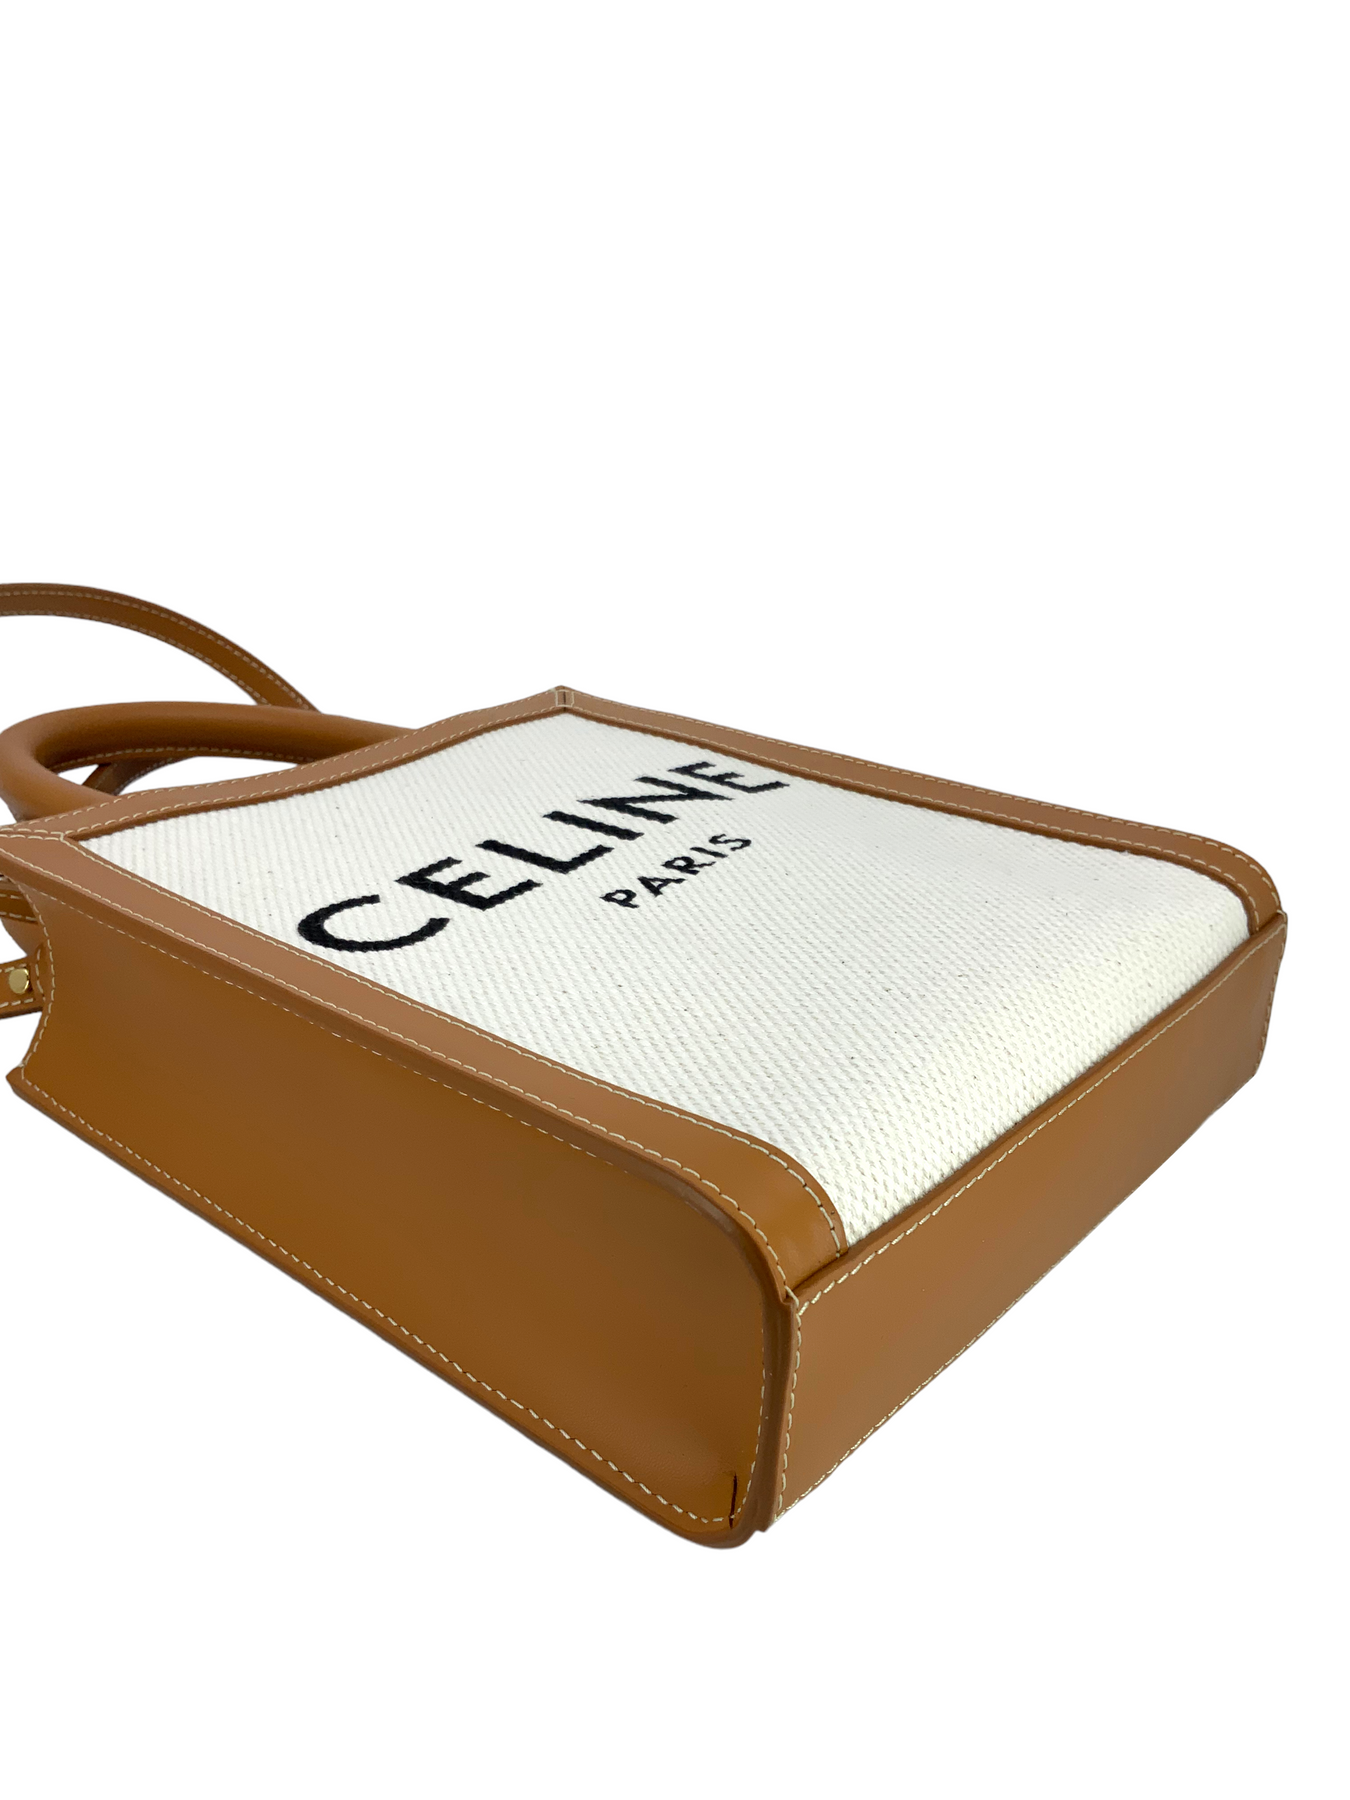 Celine Vertical Cabas Tote - Red Totes, Handbags - CEL152234